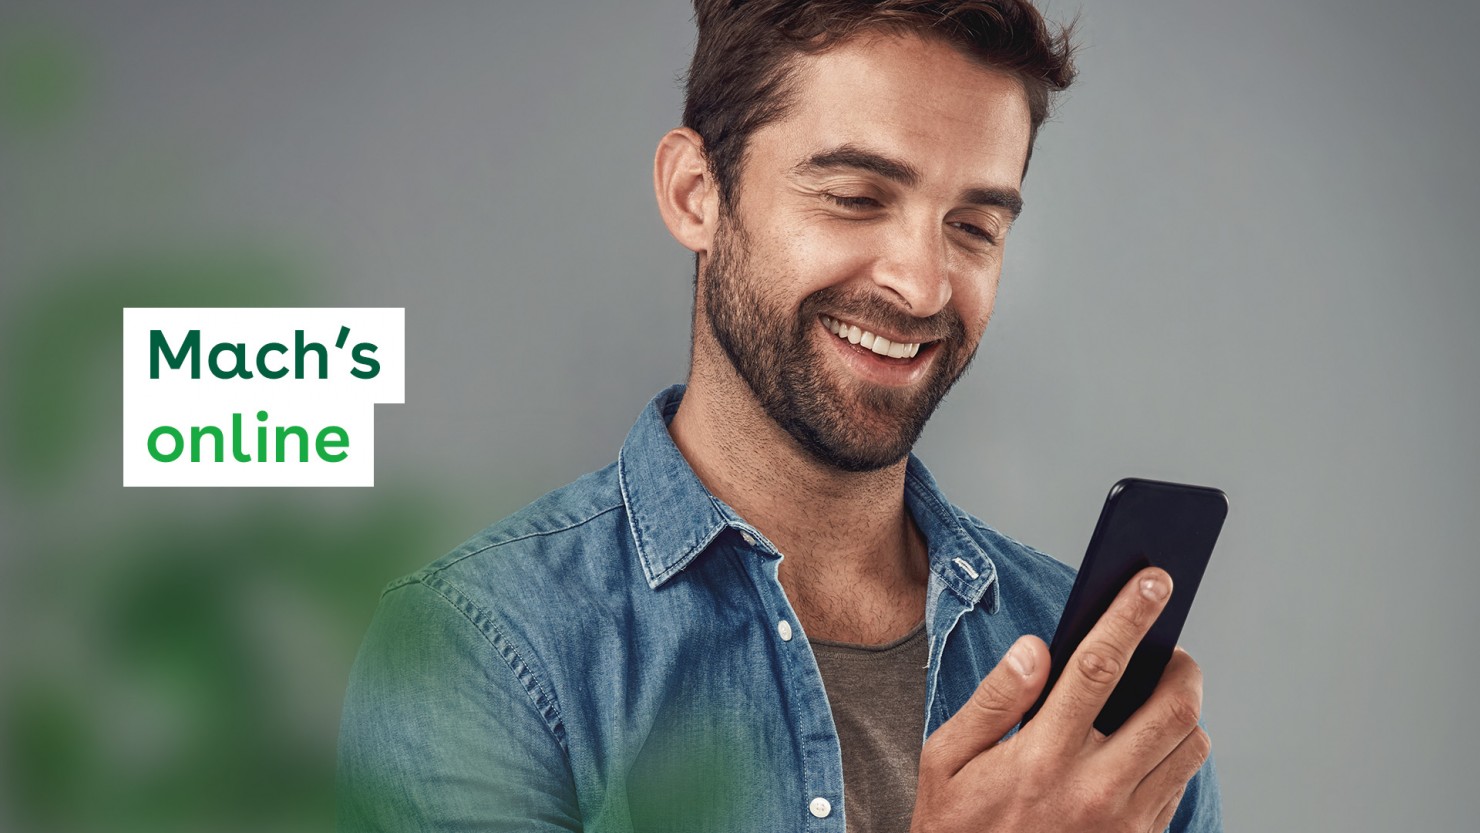 Ein Mann in einem Jeanshemd, etwa 40 Jahre, schaut lächelnd auf sein Smartphone, das er in der Hand hält.